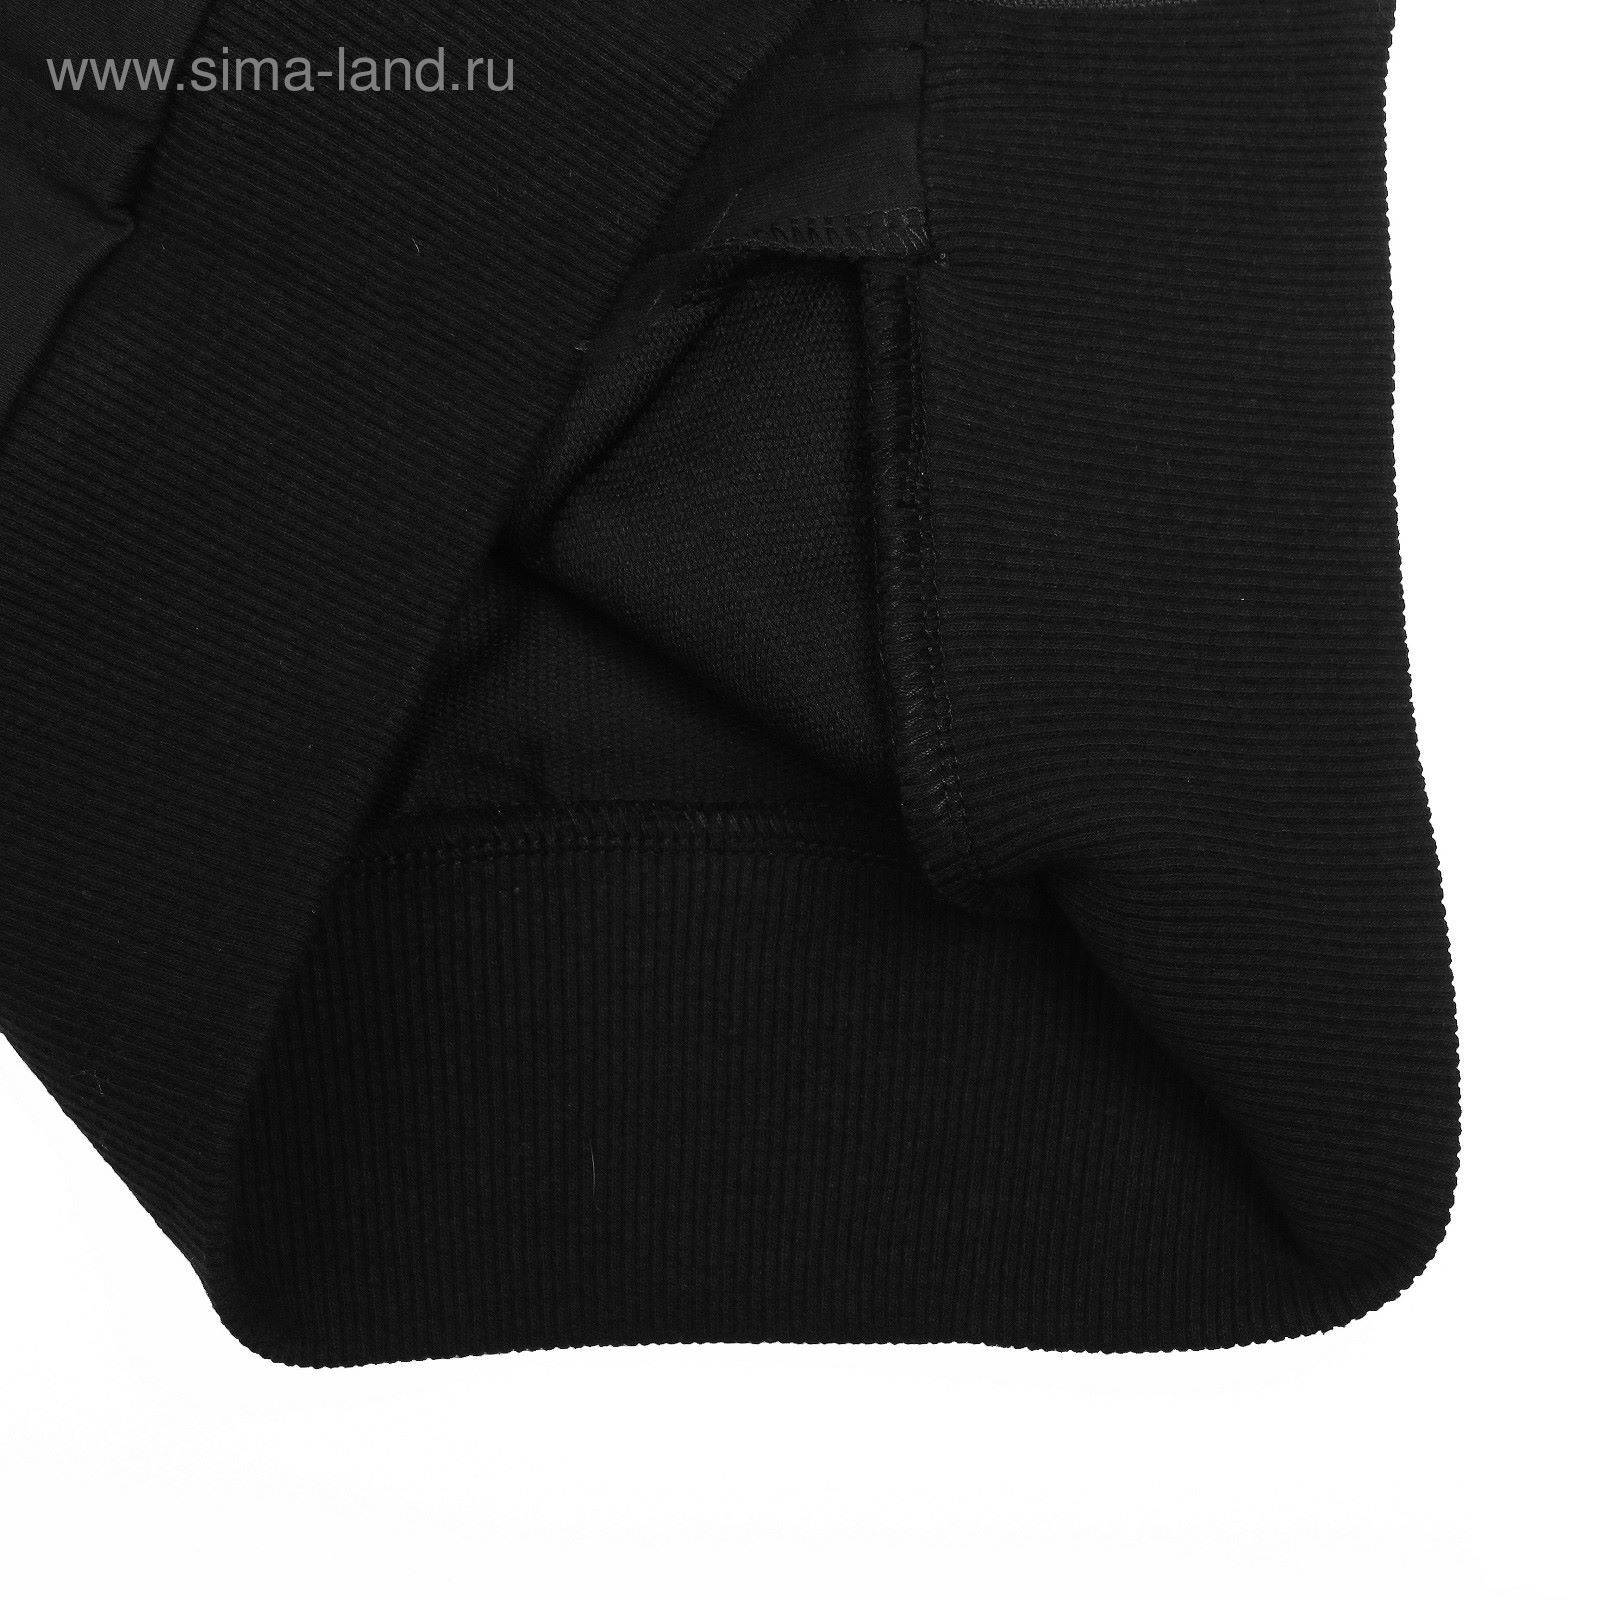 Костюм спортивный для девочки, рост 140 см (68), цвет чёрный 33-КД-28Ш